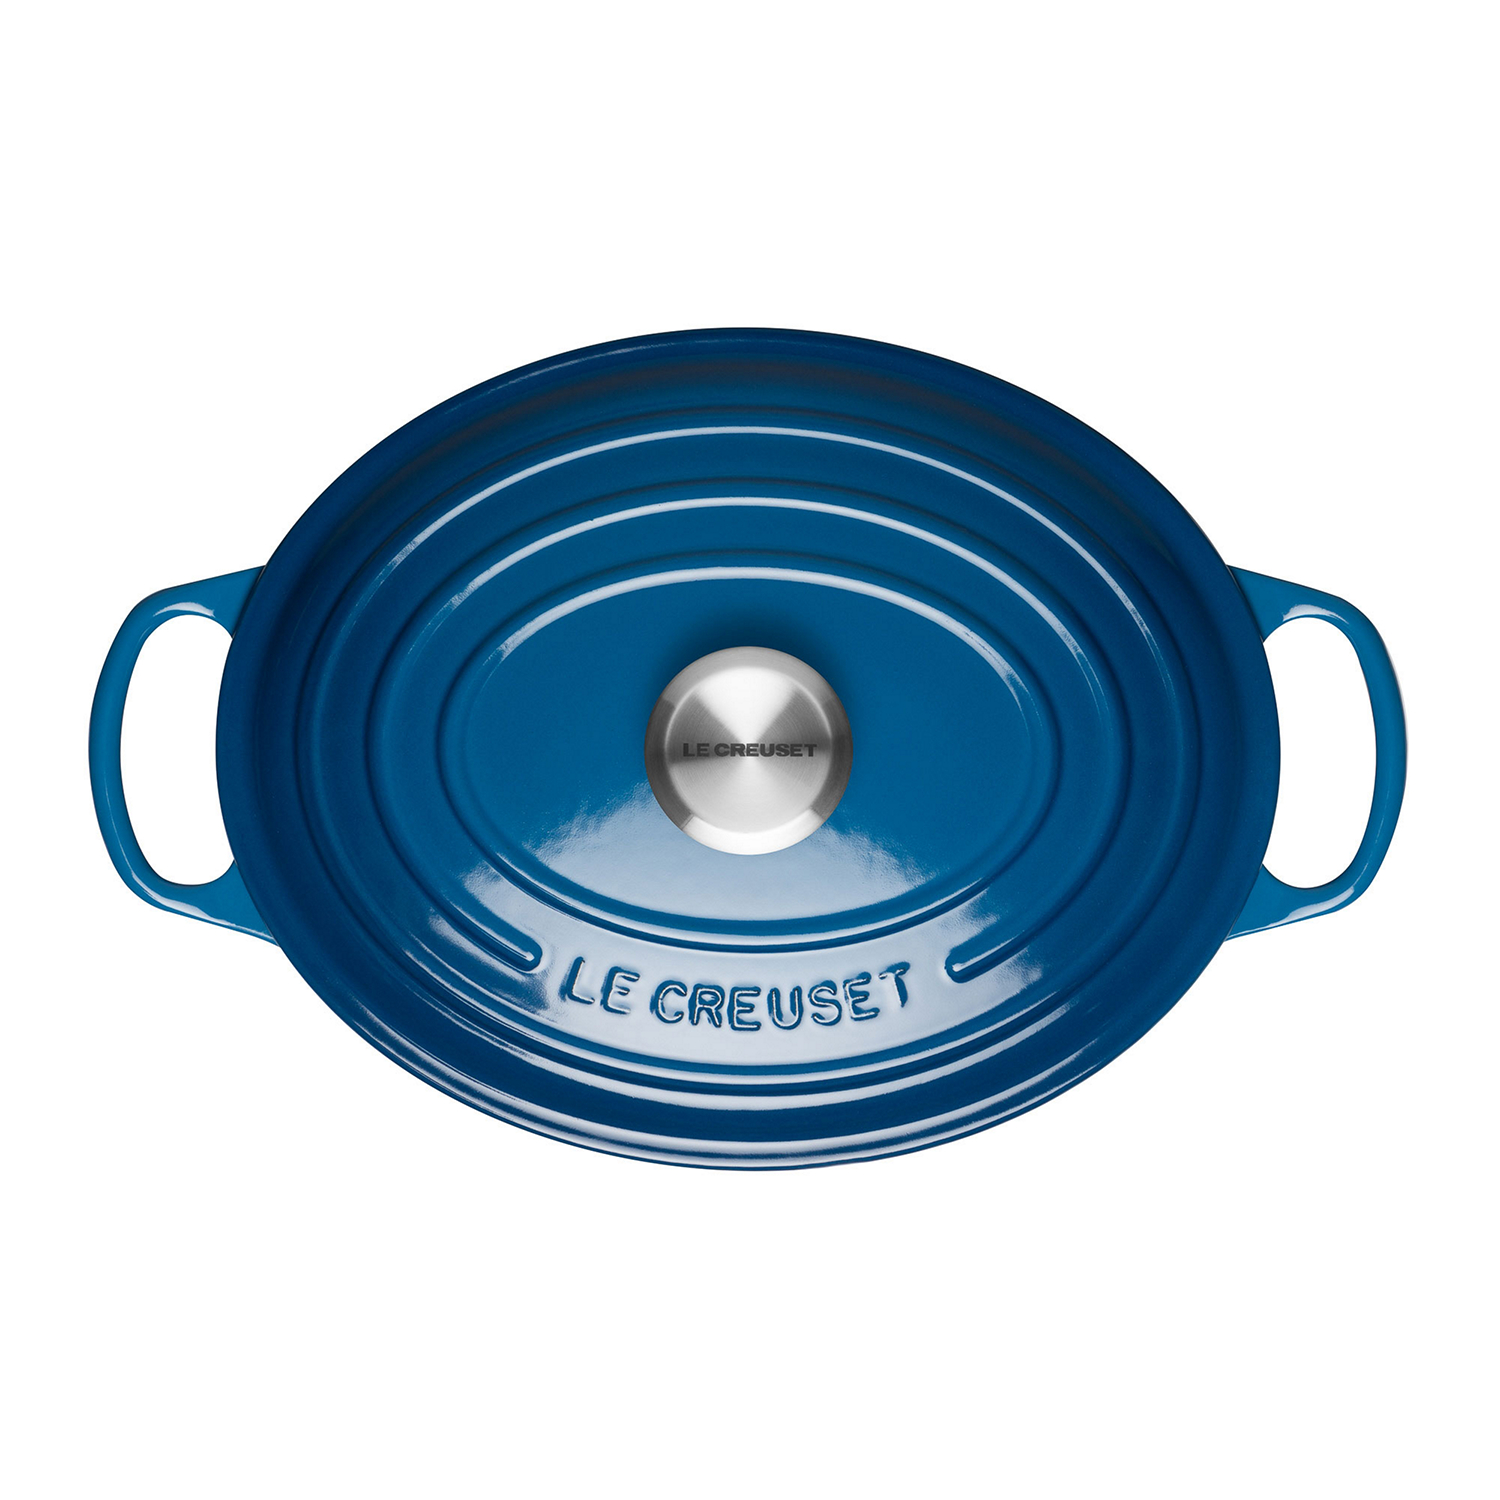 Signature Cast Iron Oval Casserole 29cm Marseille Blue